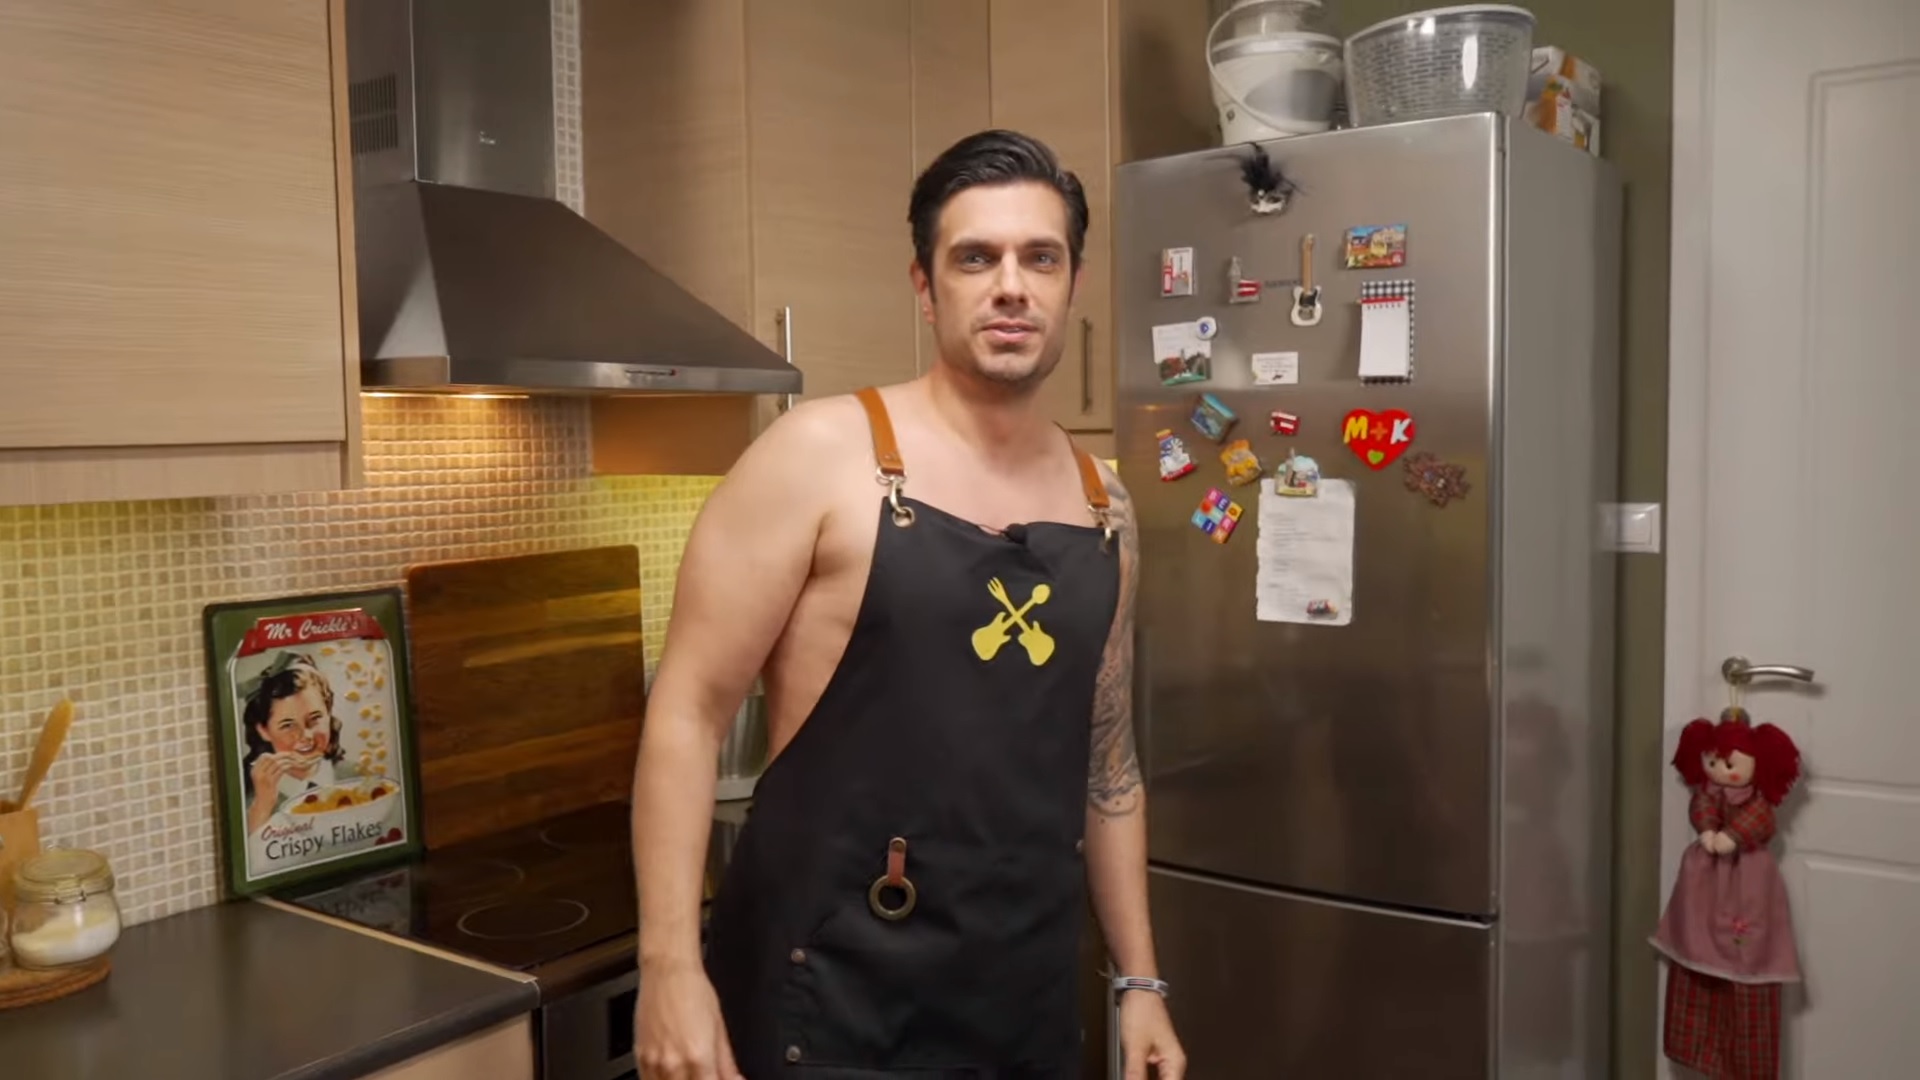 Μύρωνας Στρατής: Μαγειρεύει καλαμάρι καρμπονάρα στην κουζίνα του… ολόγυμνος! [video]